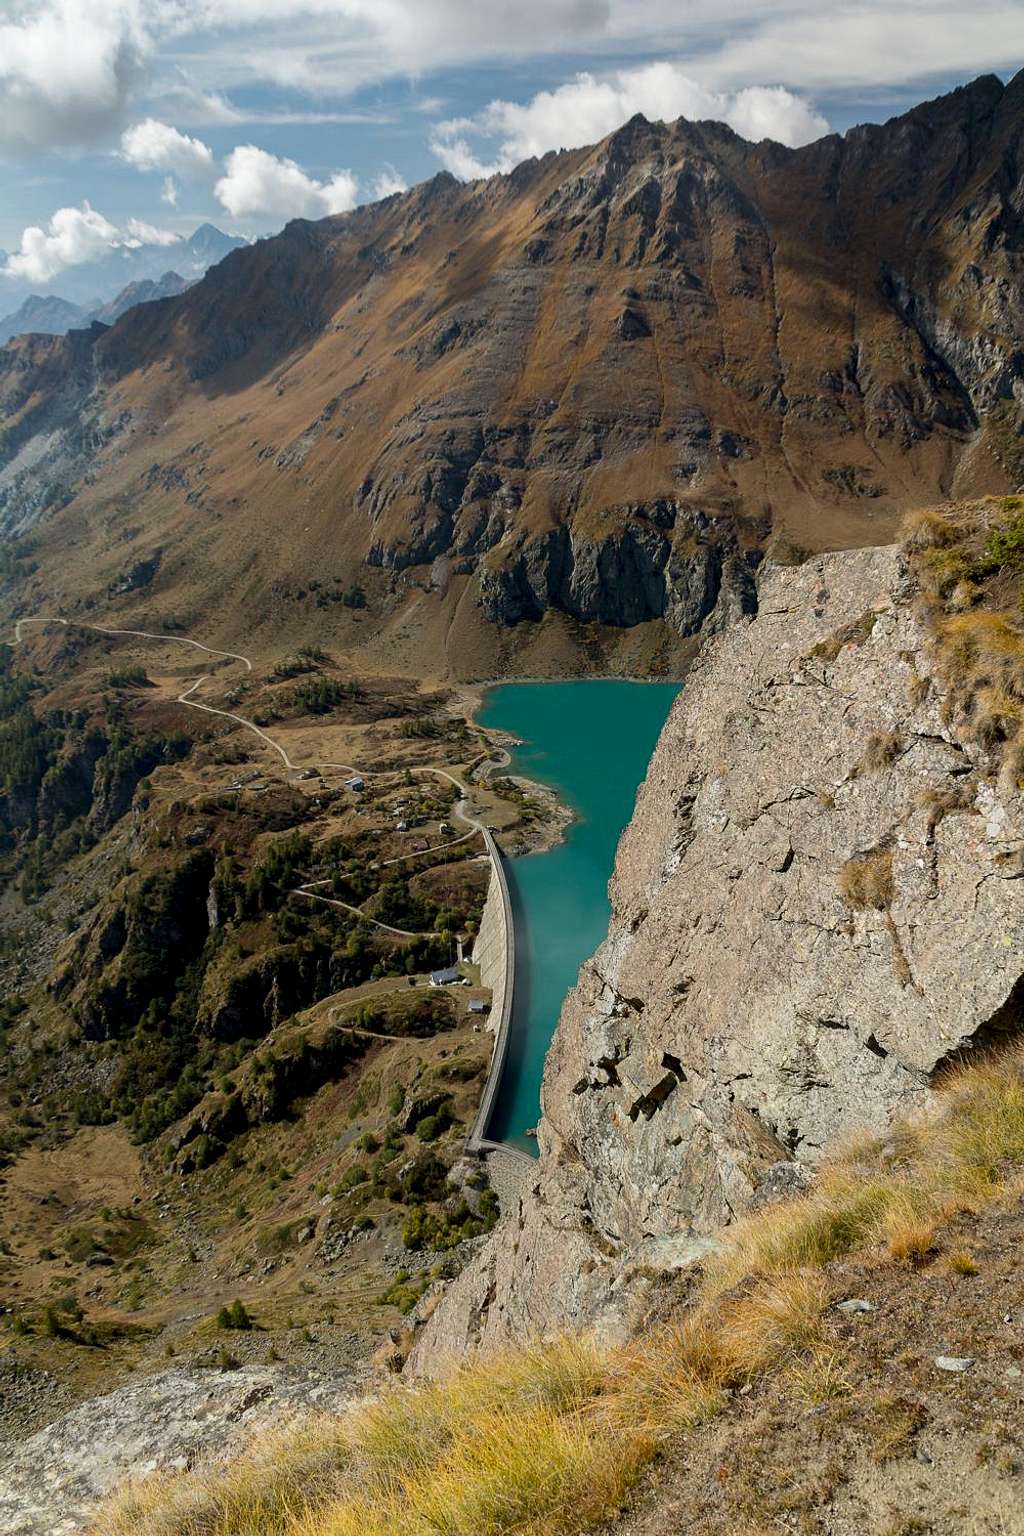 The dam of Lago Cignana